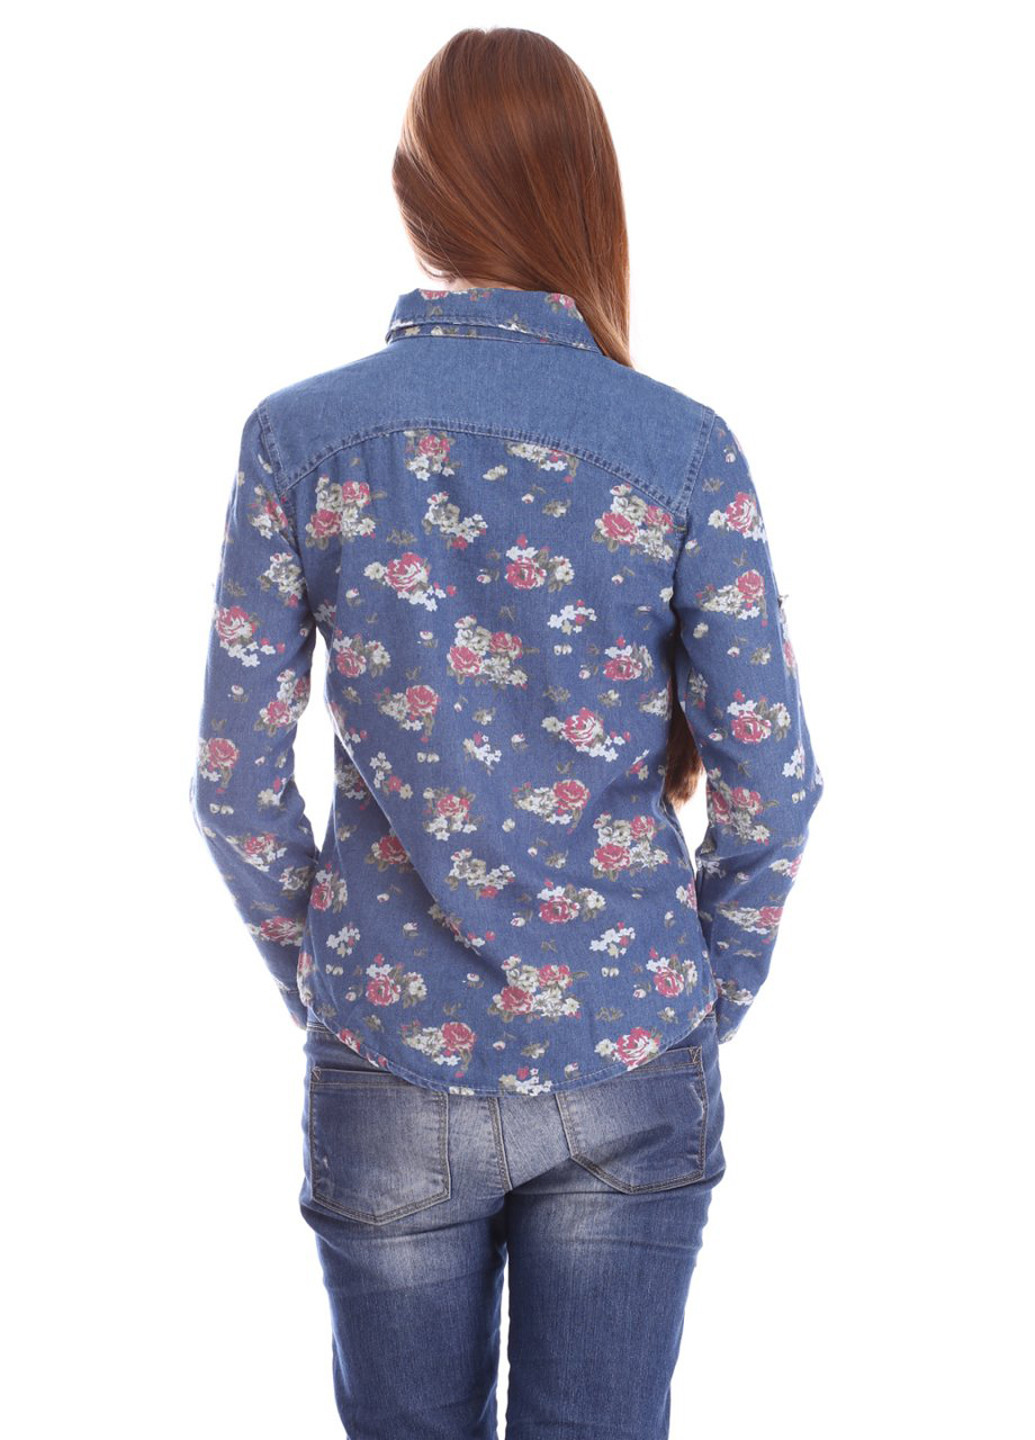 Джинсовая джинсовая рубашка с цветами Ginmeiyan Fashion